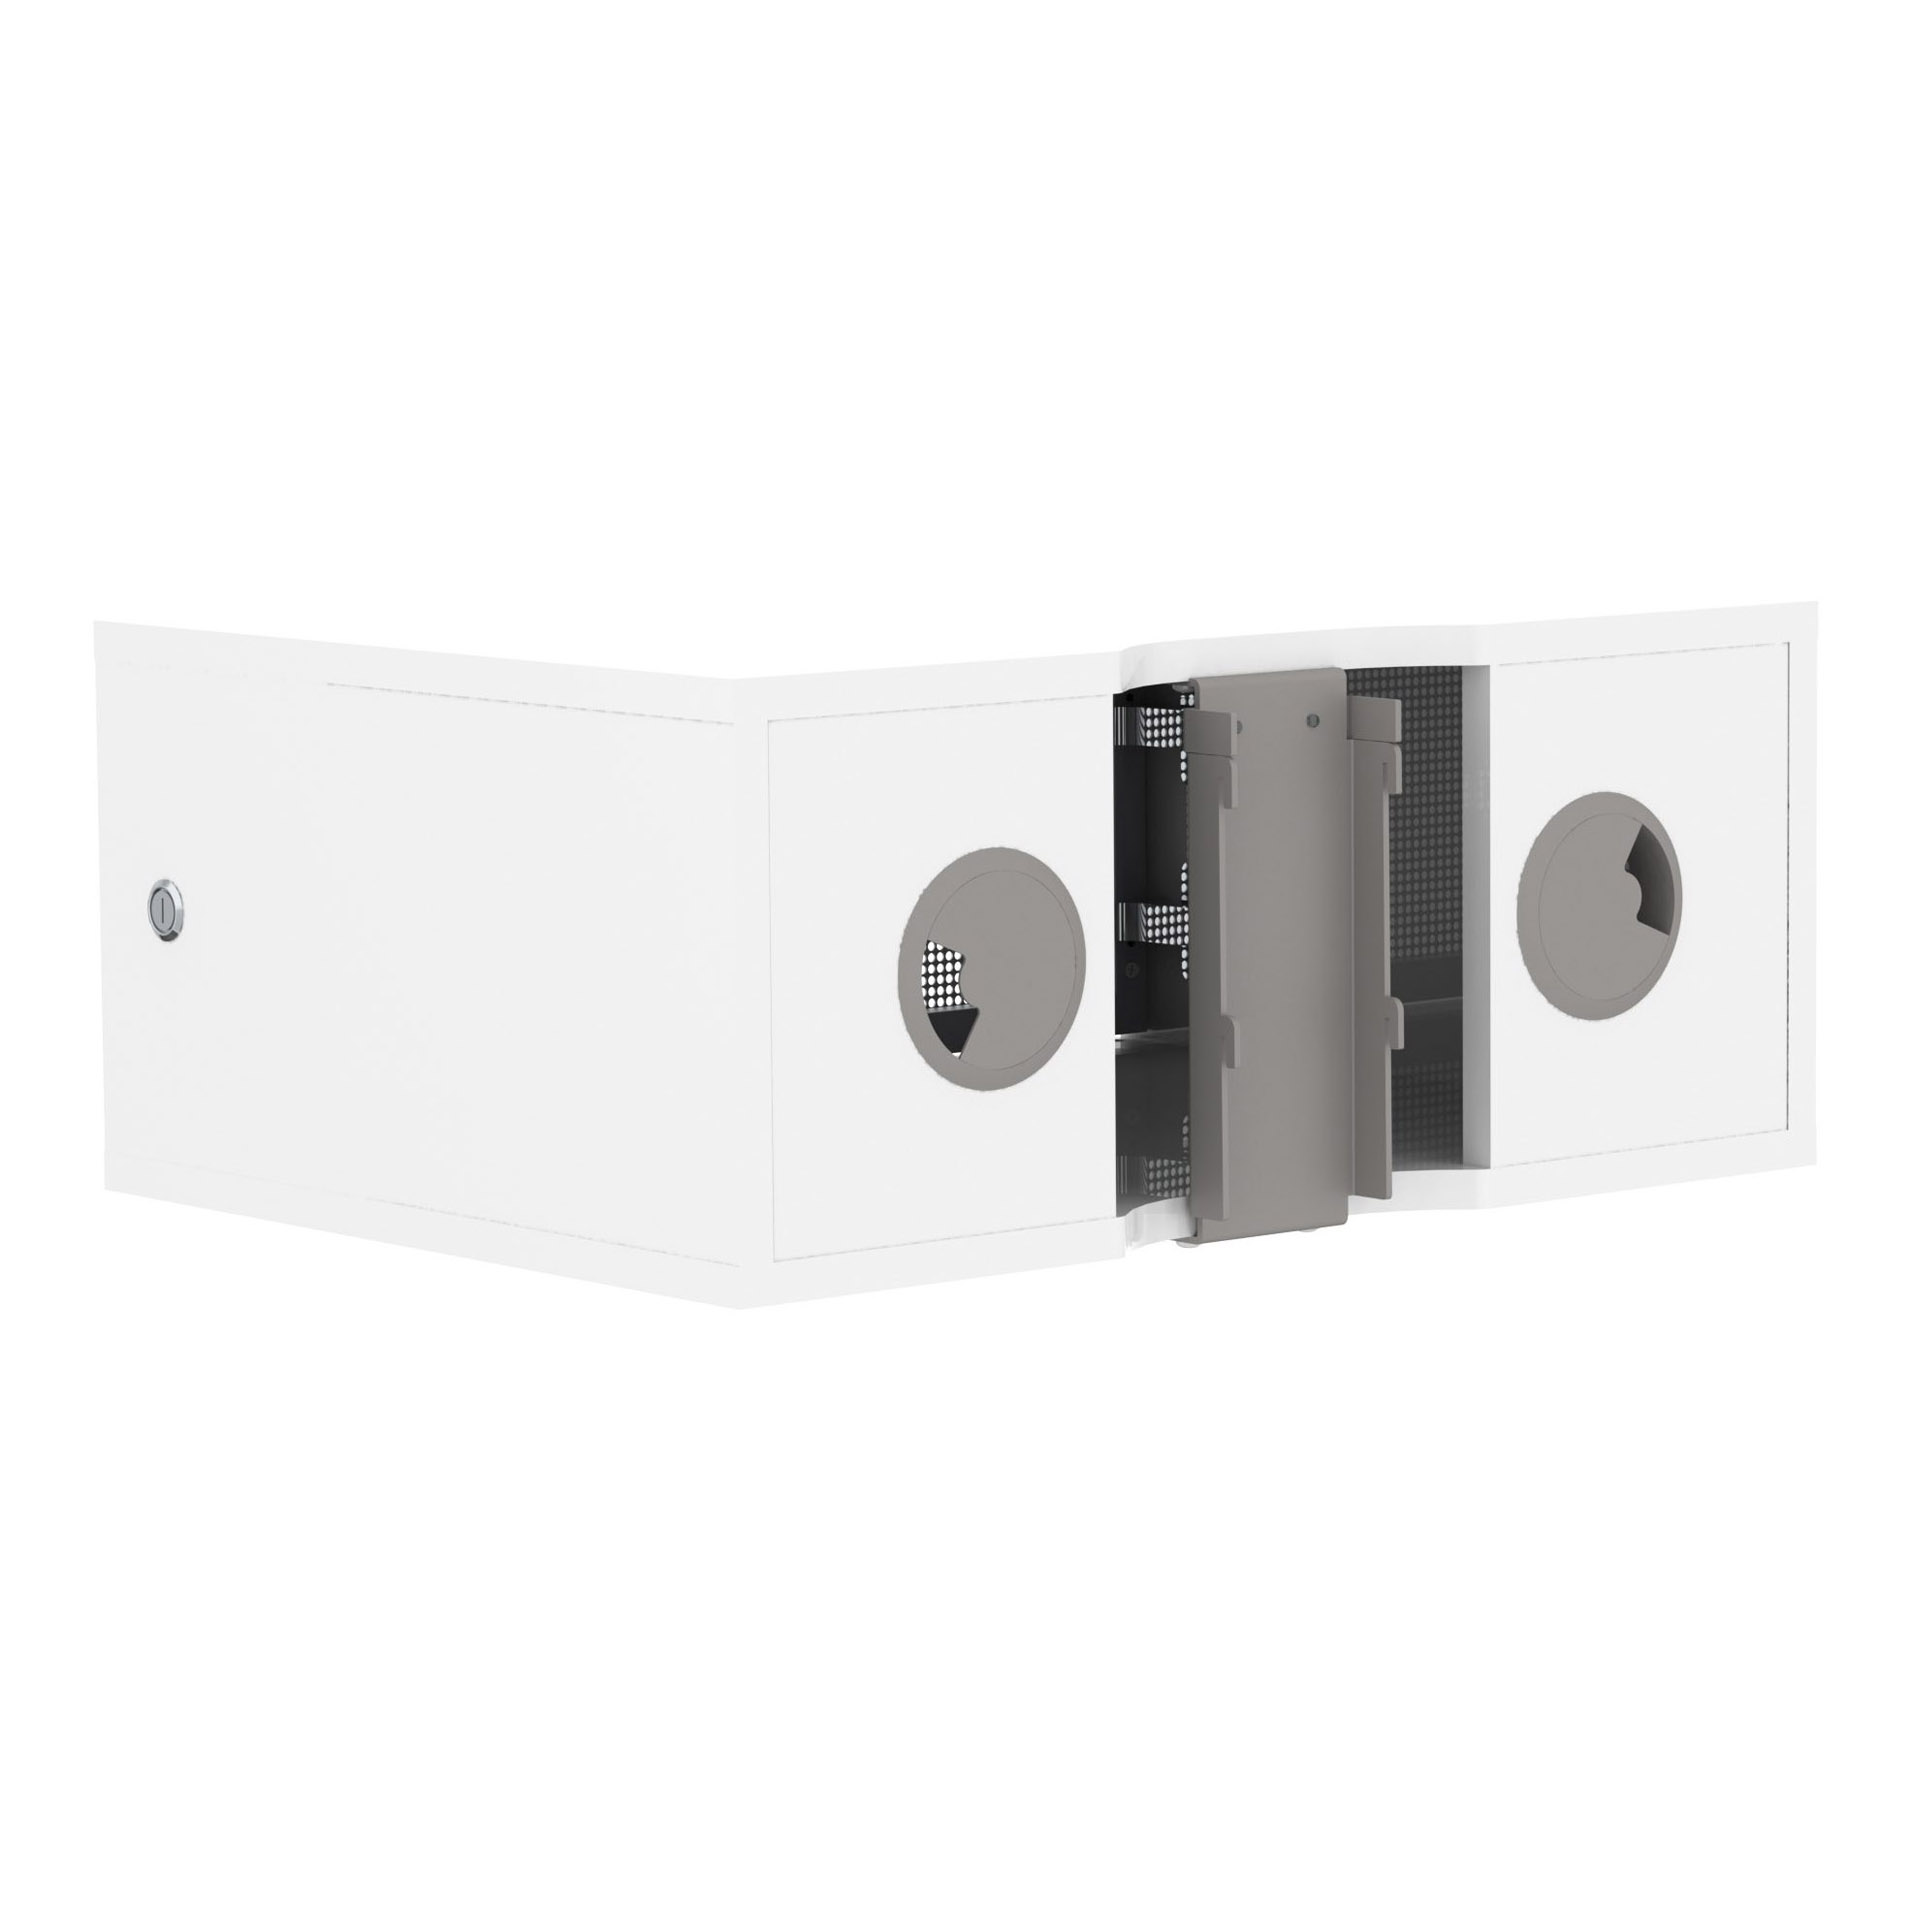 Прочие полки и боксы SMS X Media Box Perforated Door White прочие полки и боксы sms x media box perforated door white